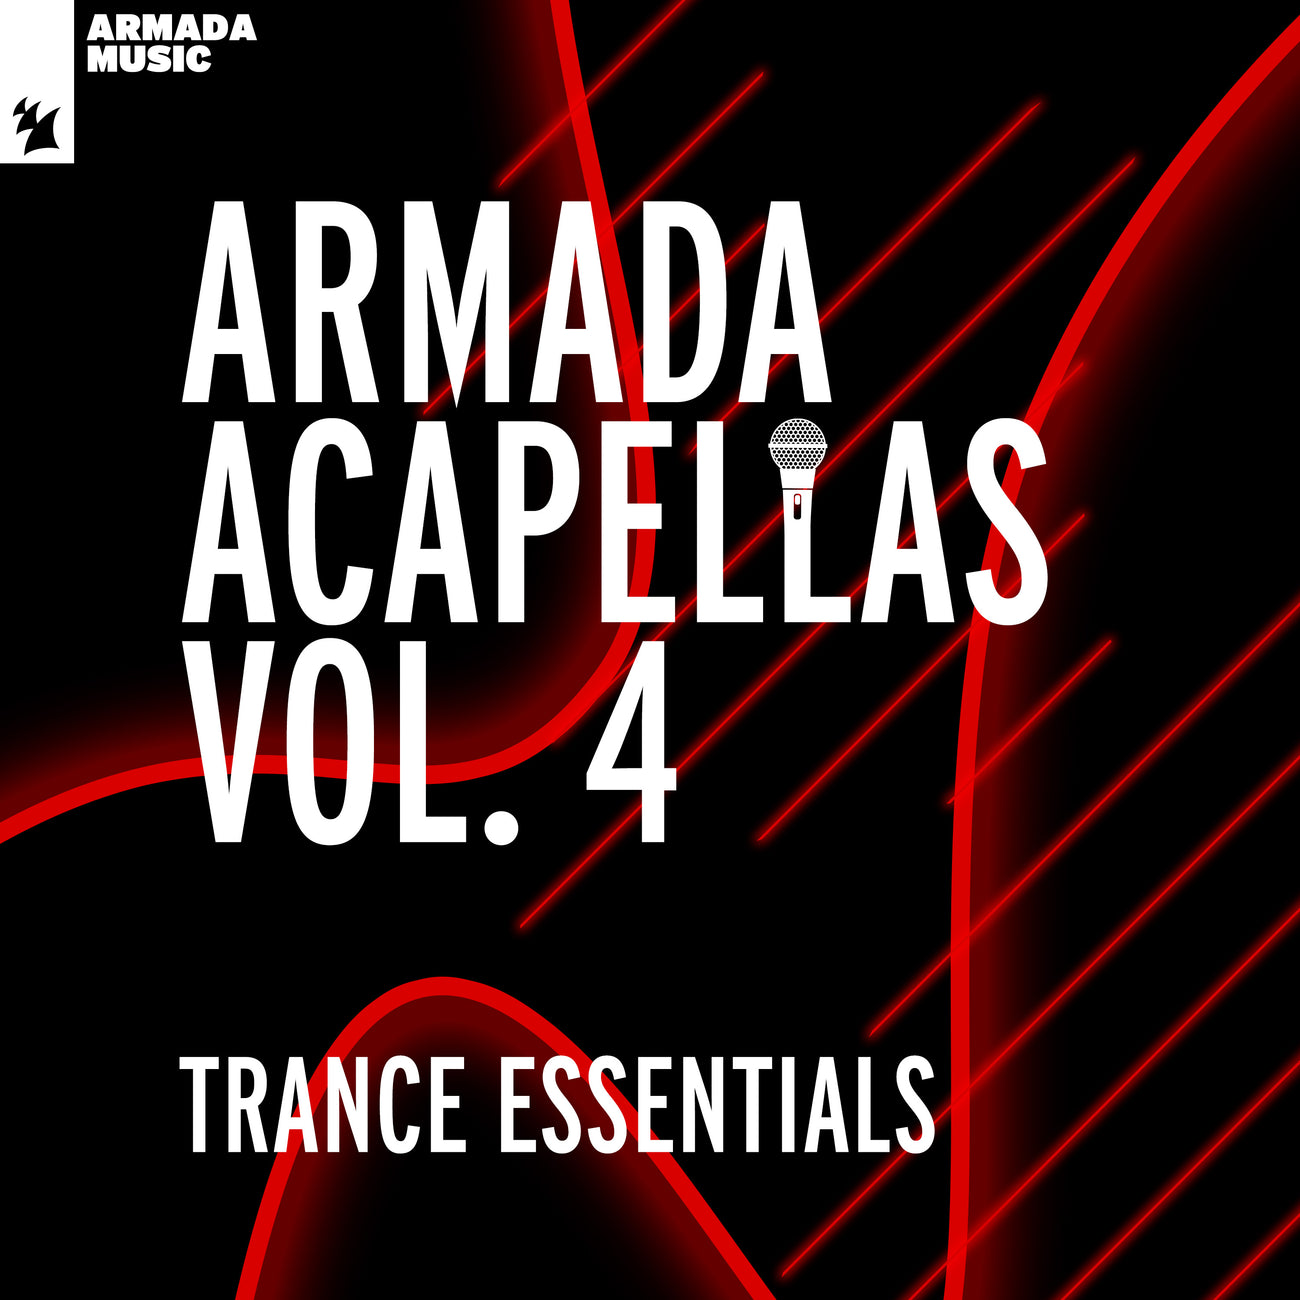 Armada Acapellas Vol. 4 - Trance Essentials